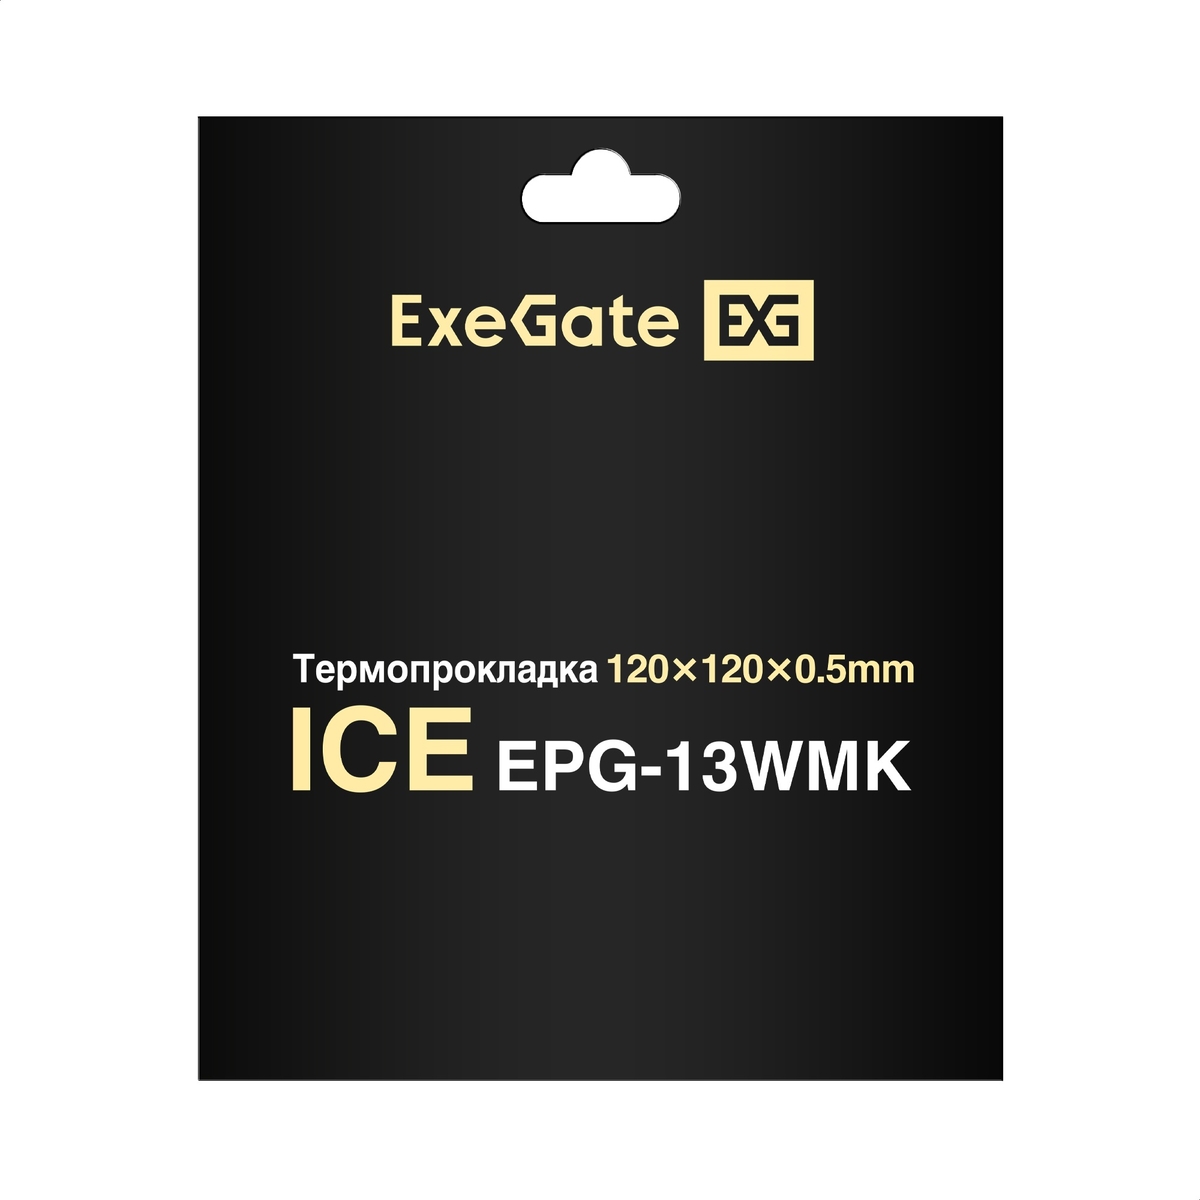  ExeGate Ice EPG-13WMK 120x120x0.5